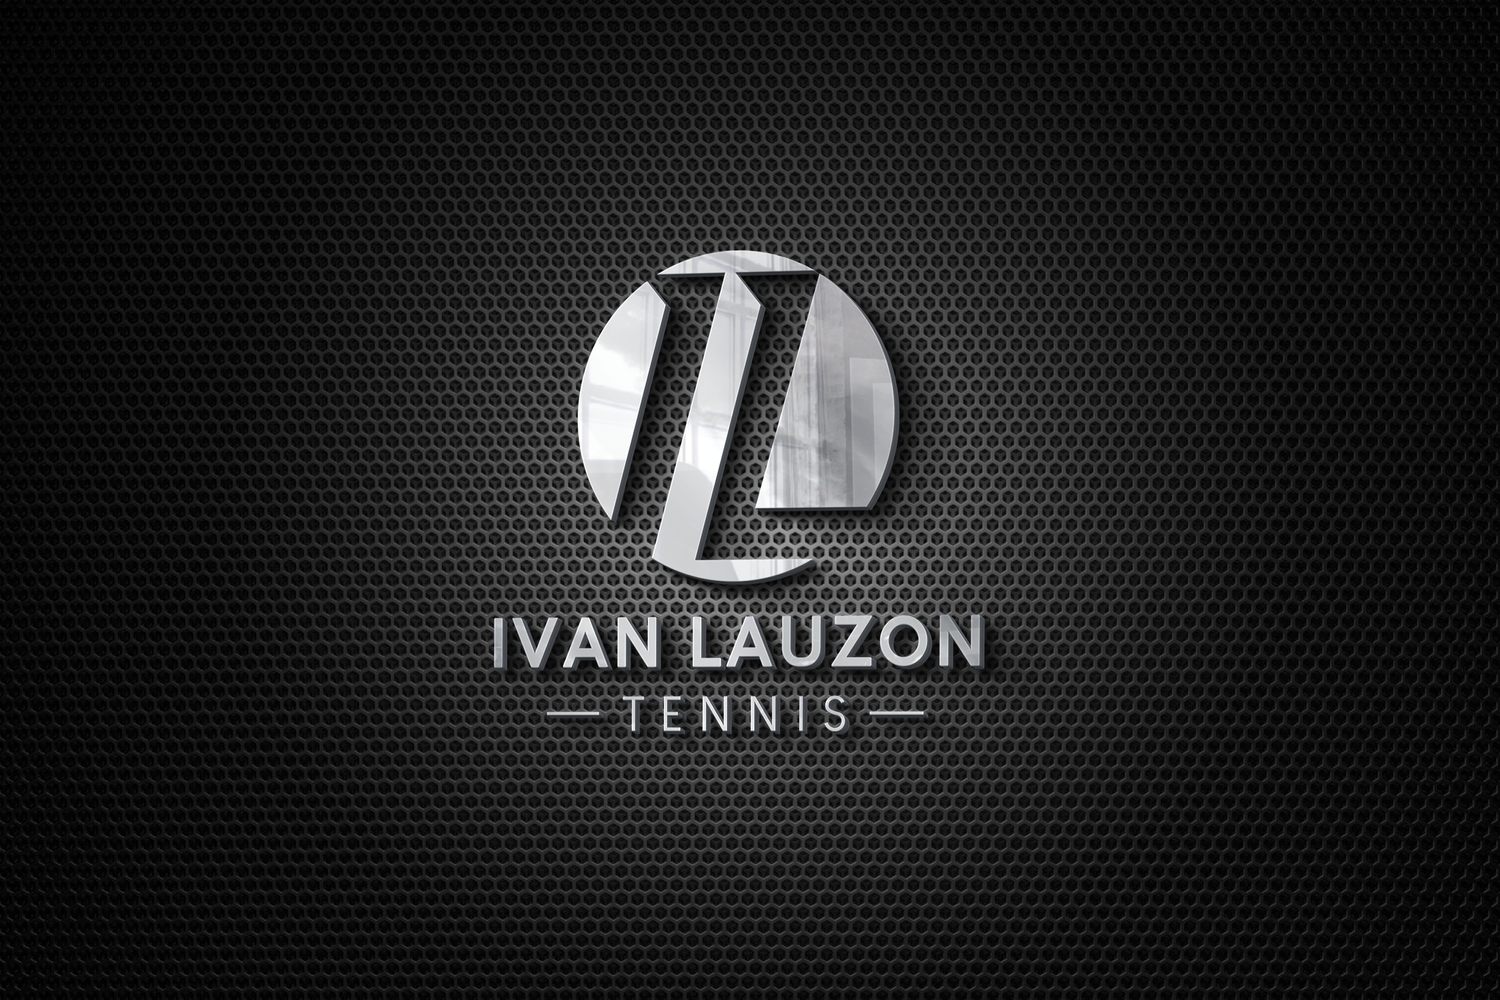 Ivan Lauzon Tennis